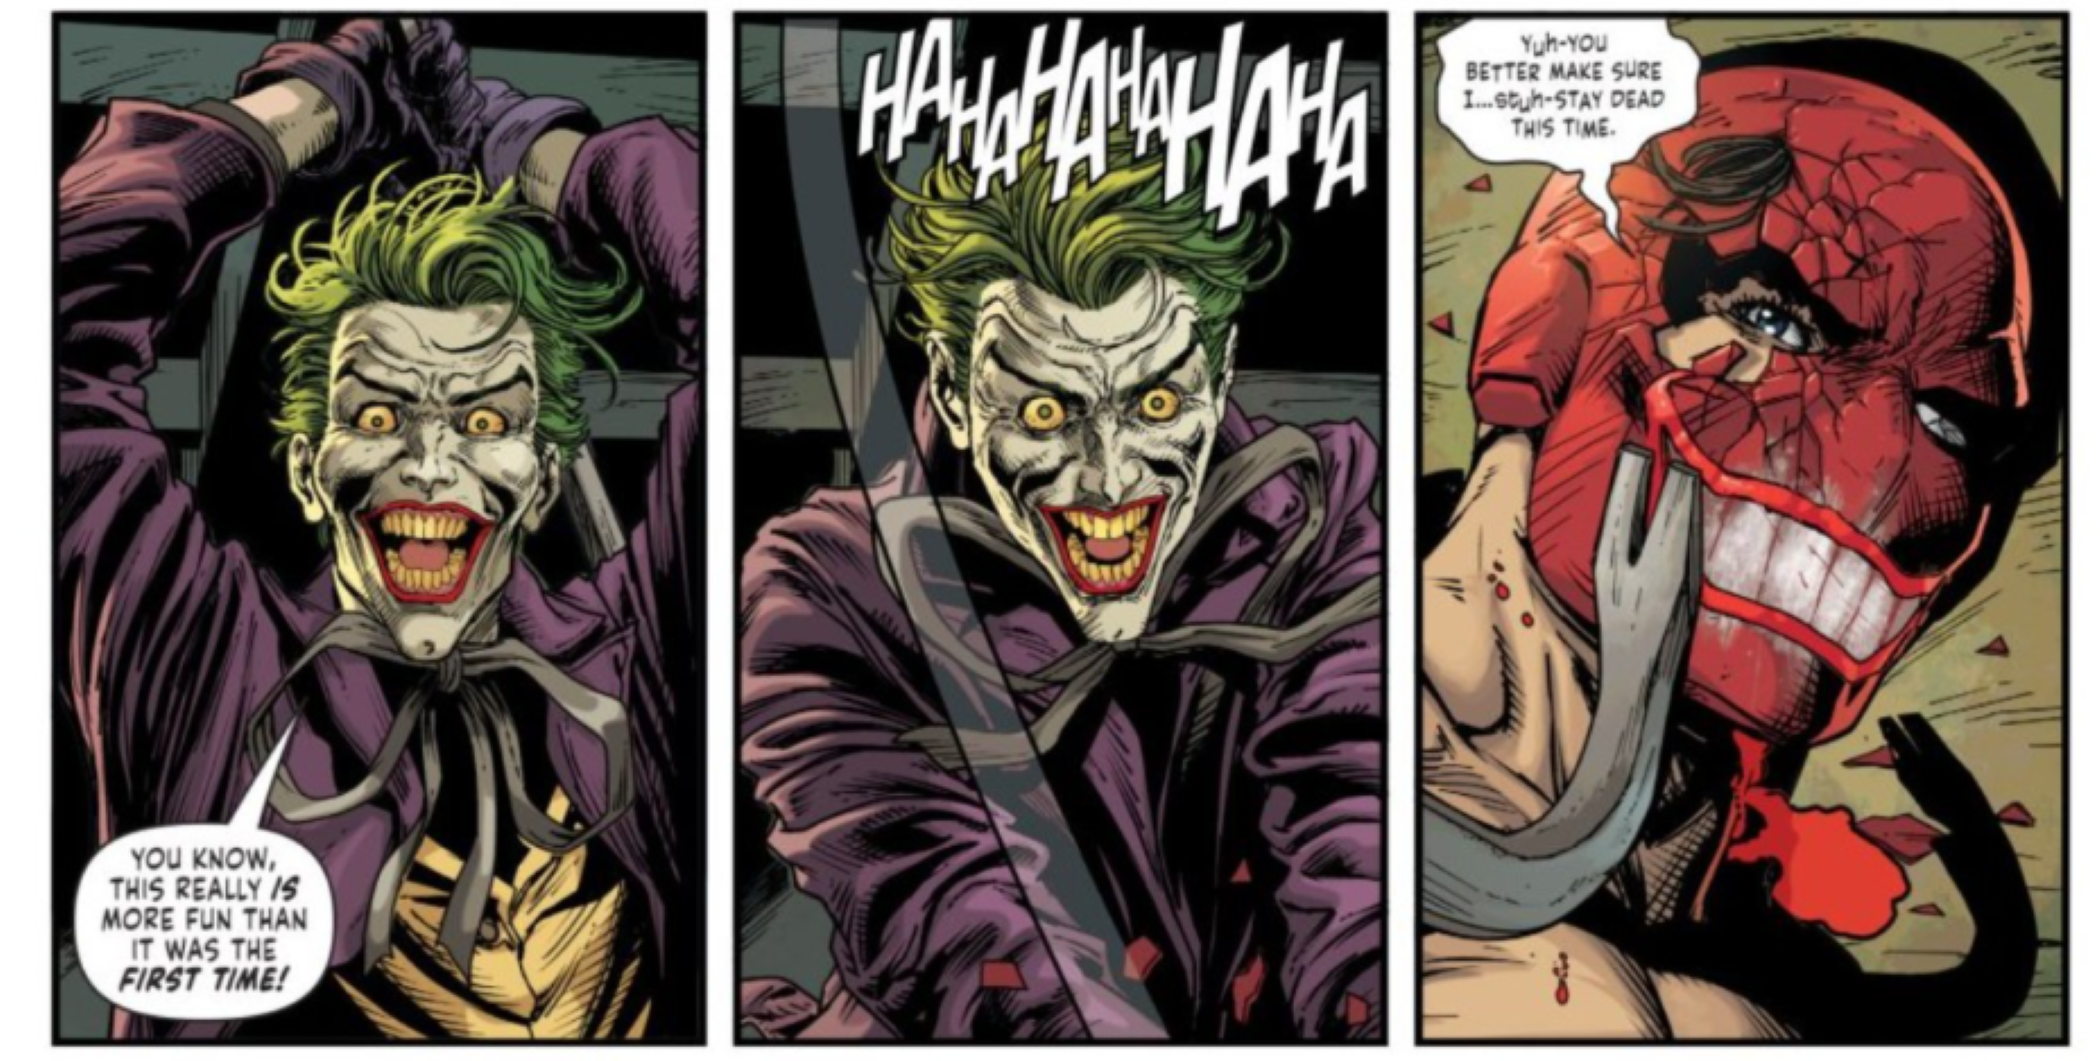 Les Jokers battent brutalement Red Hood avec une barre de corbeau, le masque de Red Hood peint avec le sourire du Joker